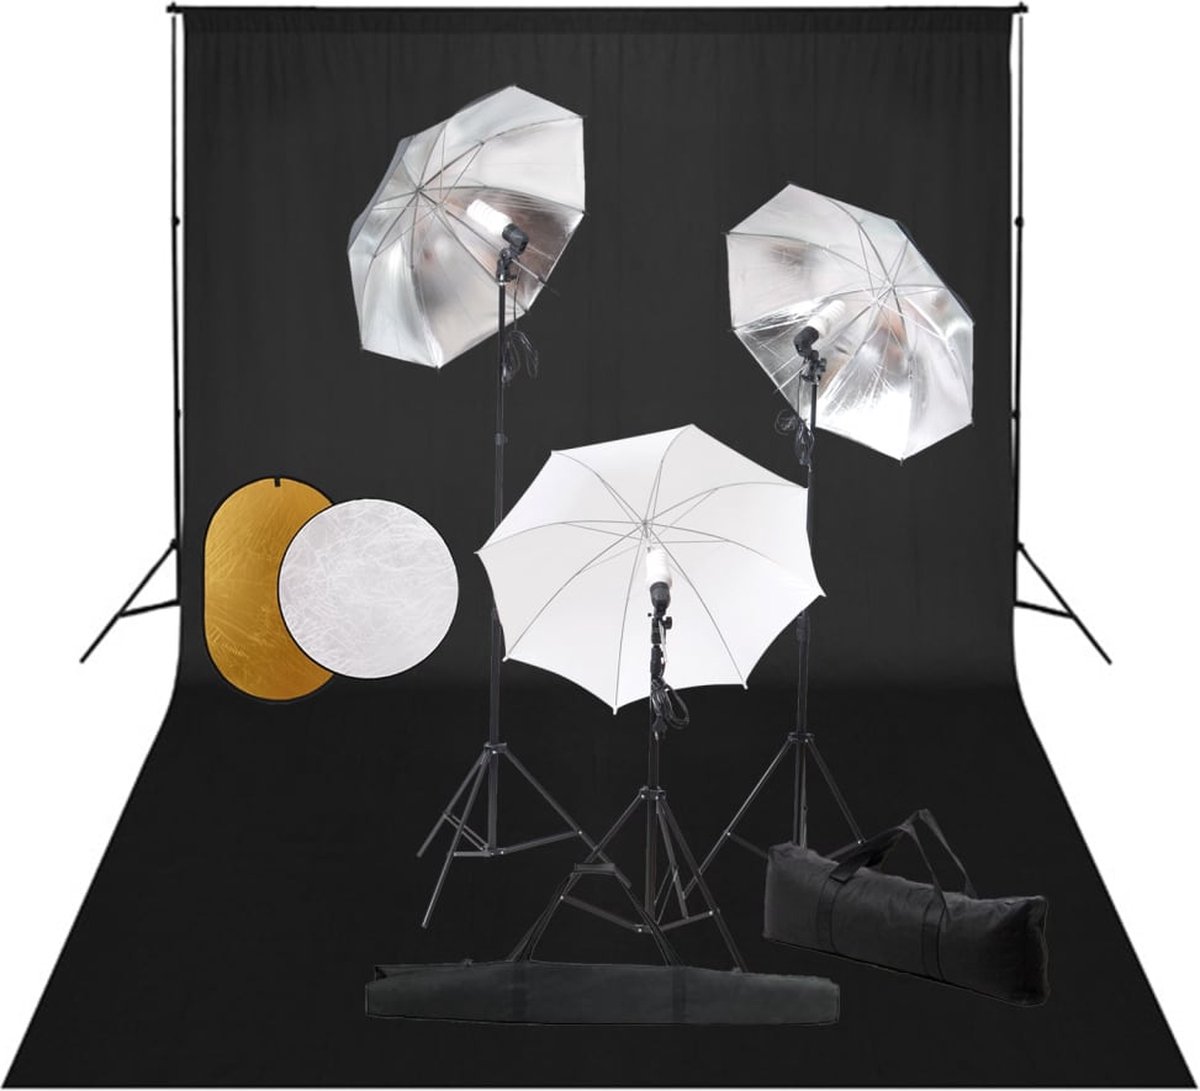 VidaLife Fotostudioset met lampen, paraplu's, achtergrond en reflector